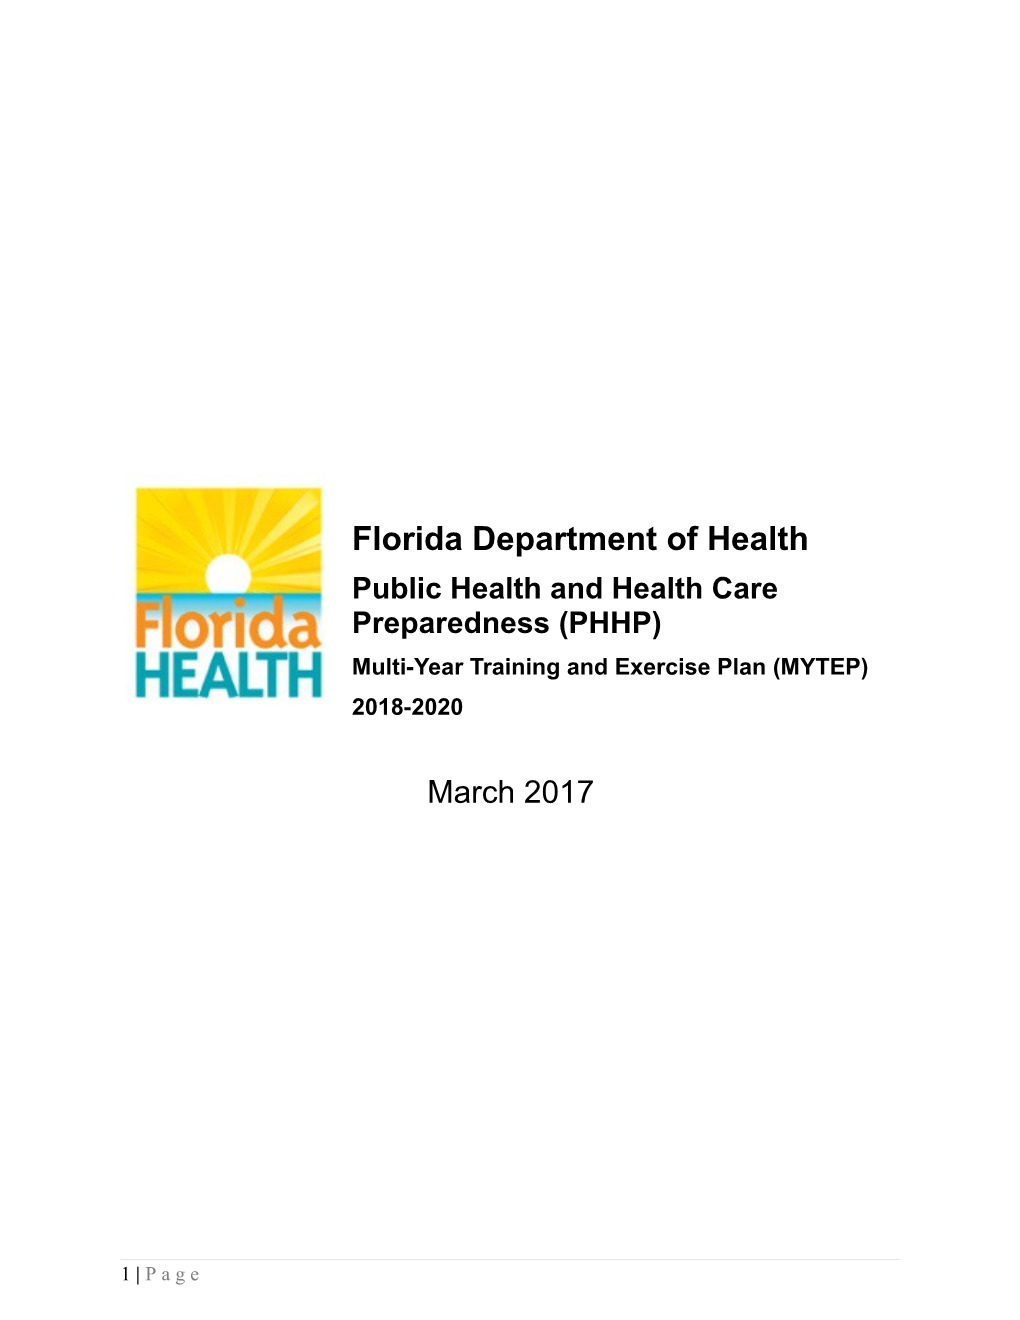 Public Health and Health Care Preparedness (PHHP)